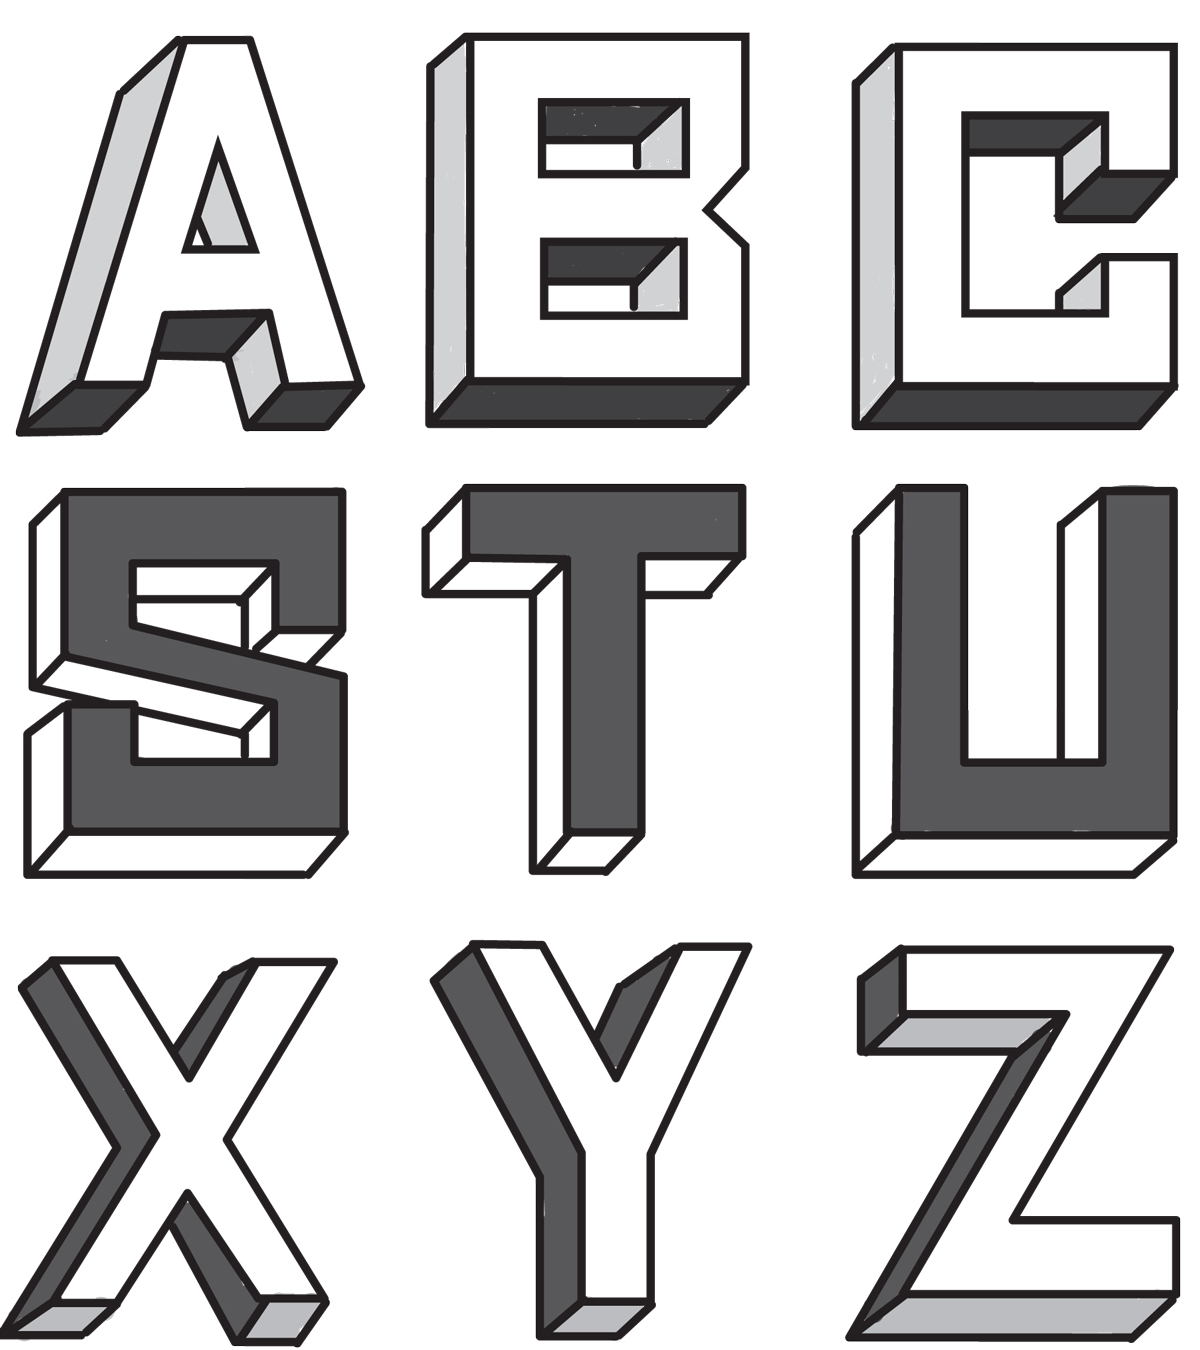 graffiti alphabet bubble letters 3d